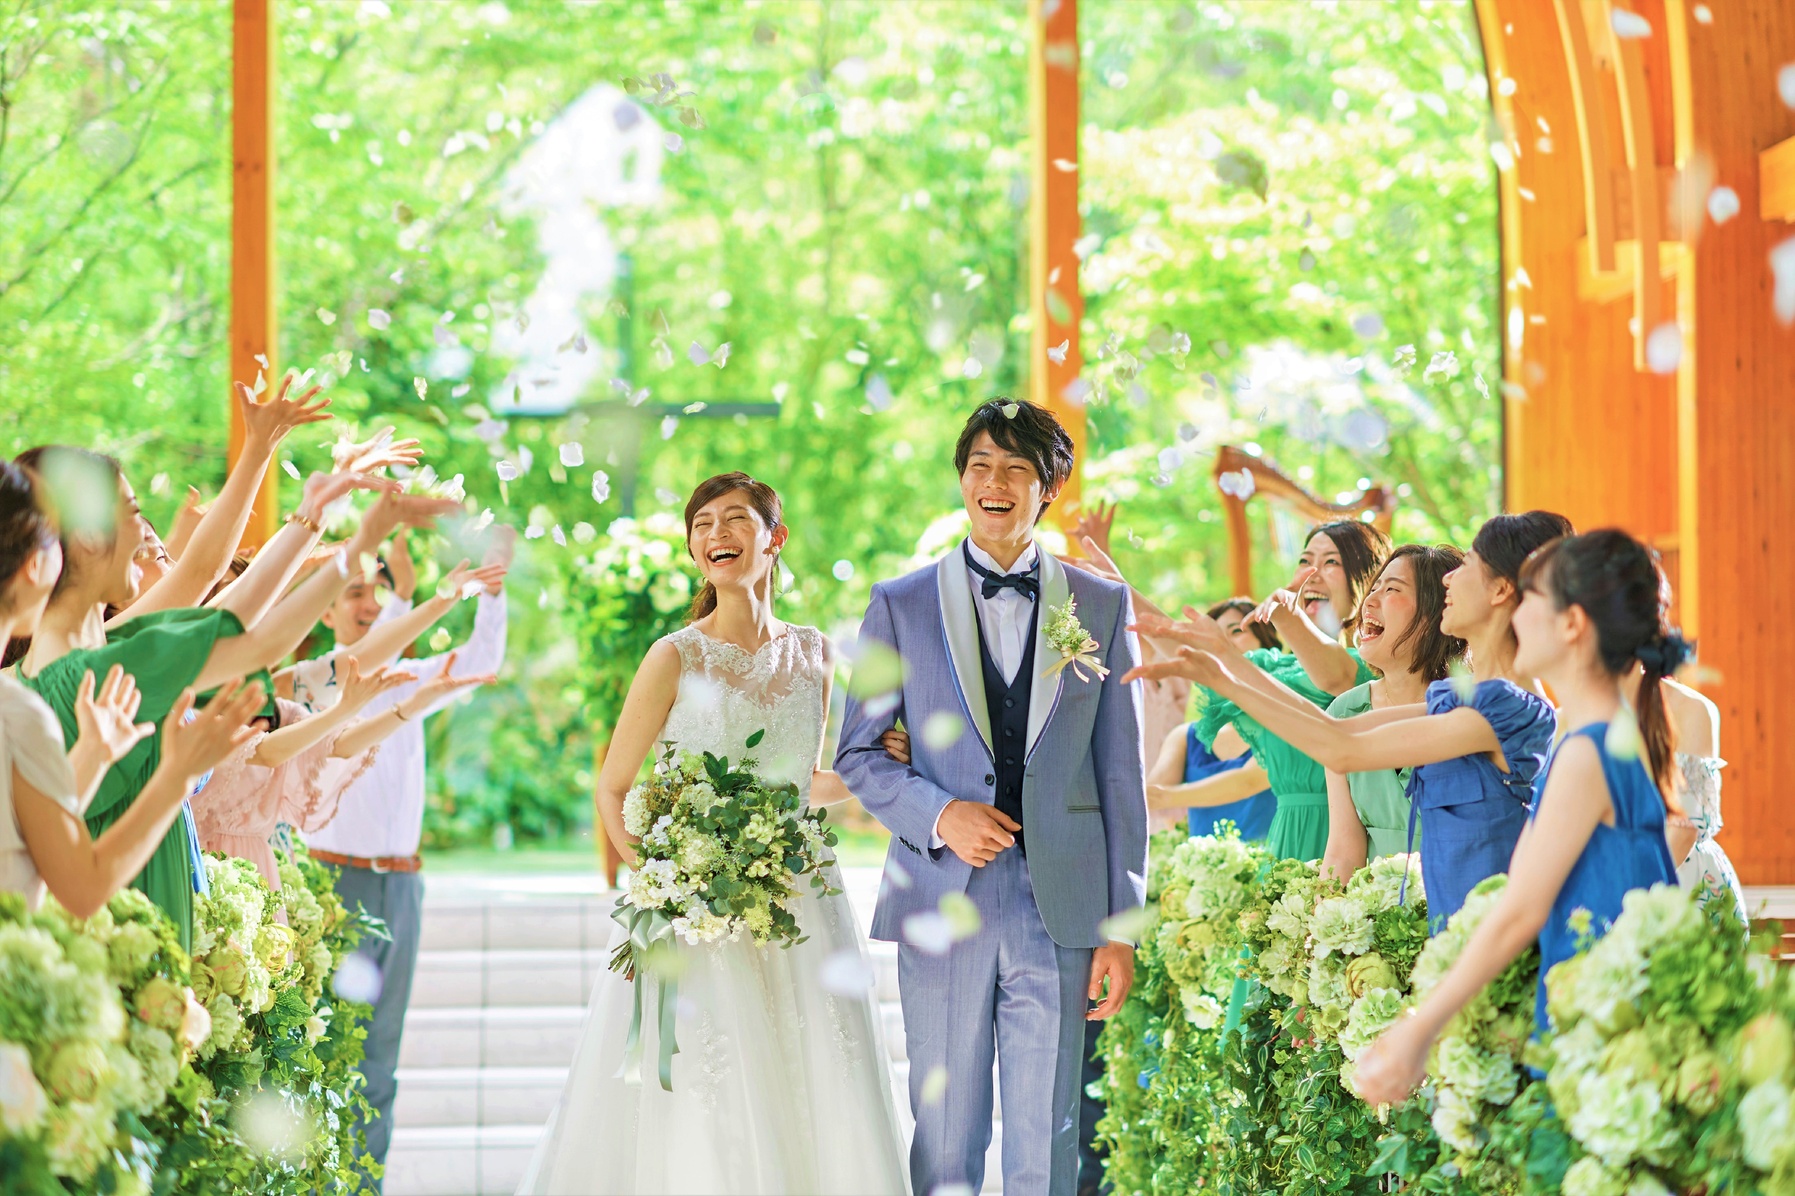 福岡県で人気の結婚式場ランキング175選 21年 ウェディングニュース